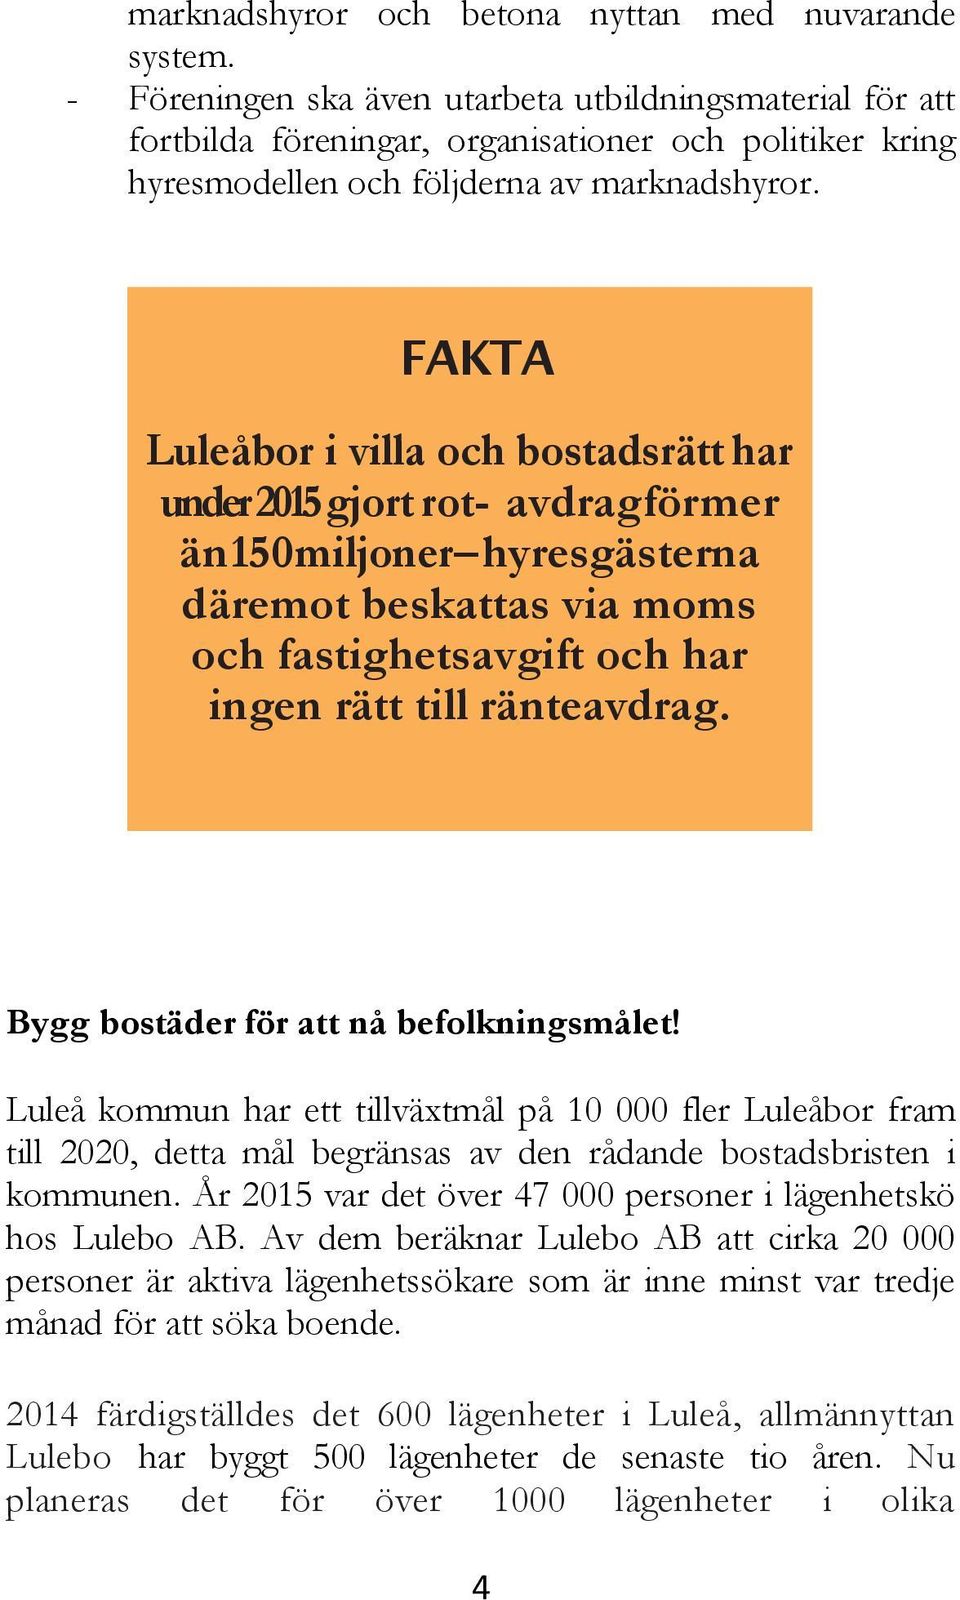 FAKTA Luleåbor i villa och bostadsrätt har under 2015 gjort rot- avdrag för mer än 150 miljoner hyresgästerna däremot beskattas via moms och fastighetsavgift och har ingen rätt till ränteavdrag.